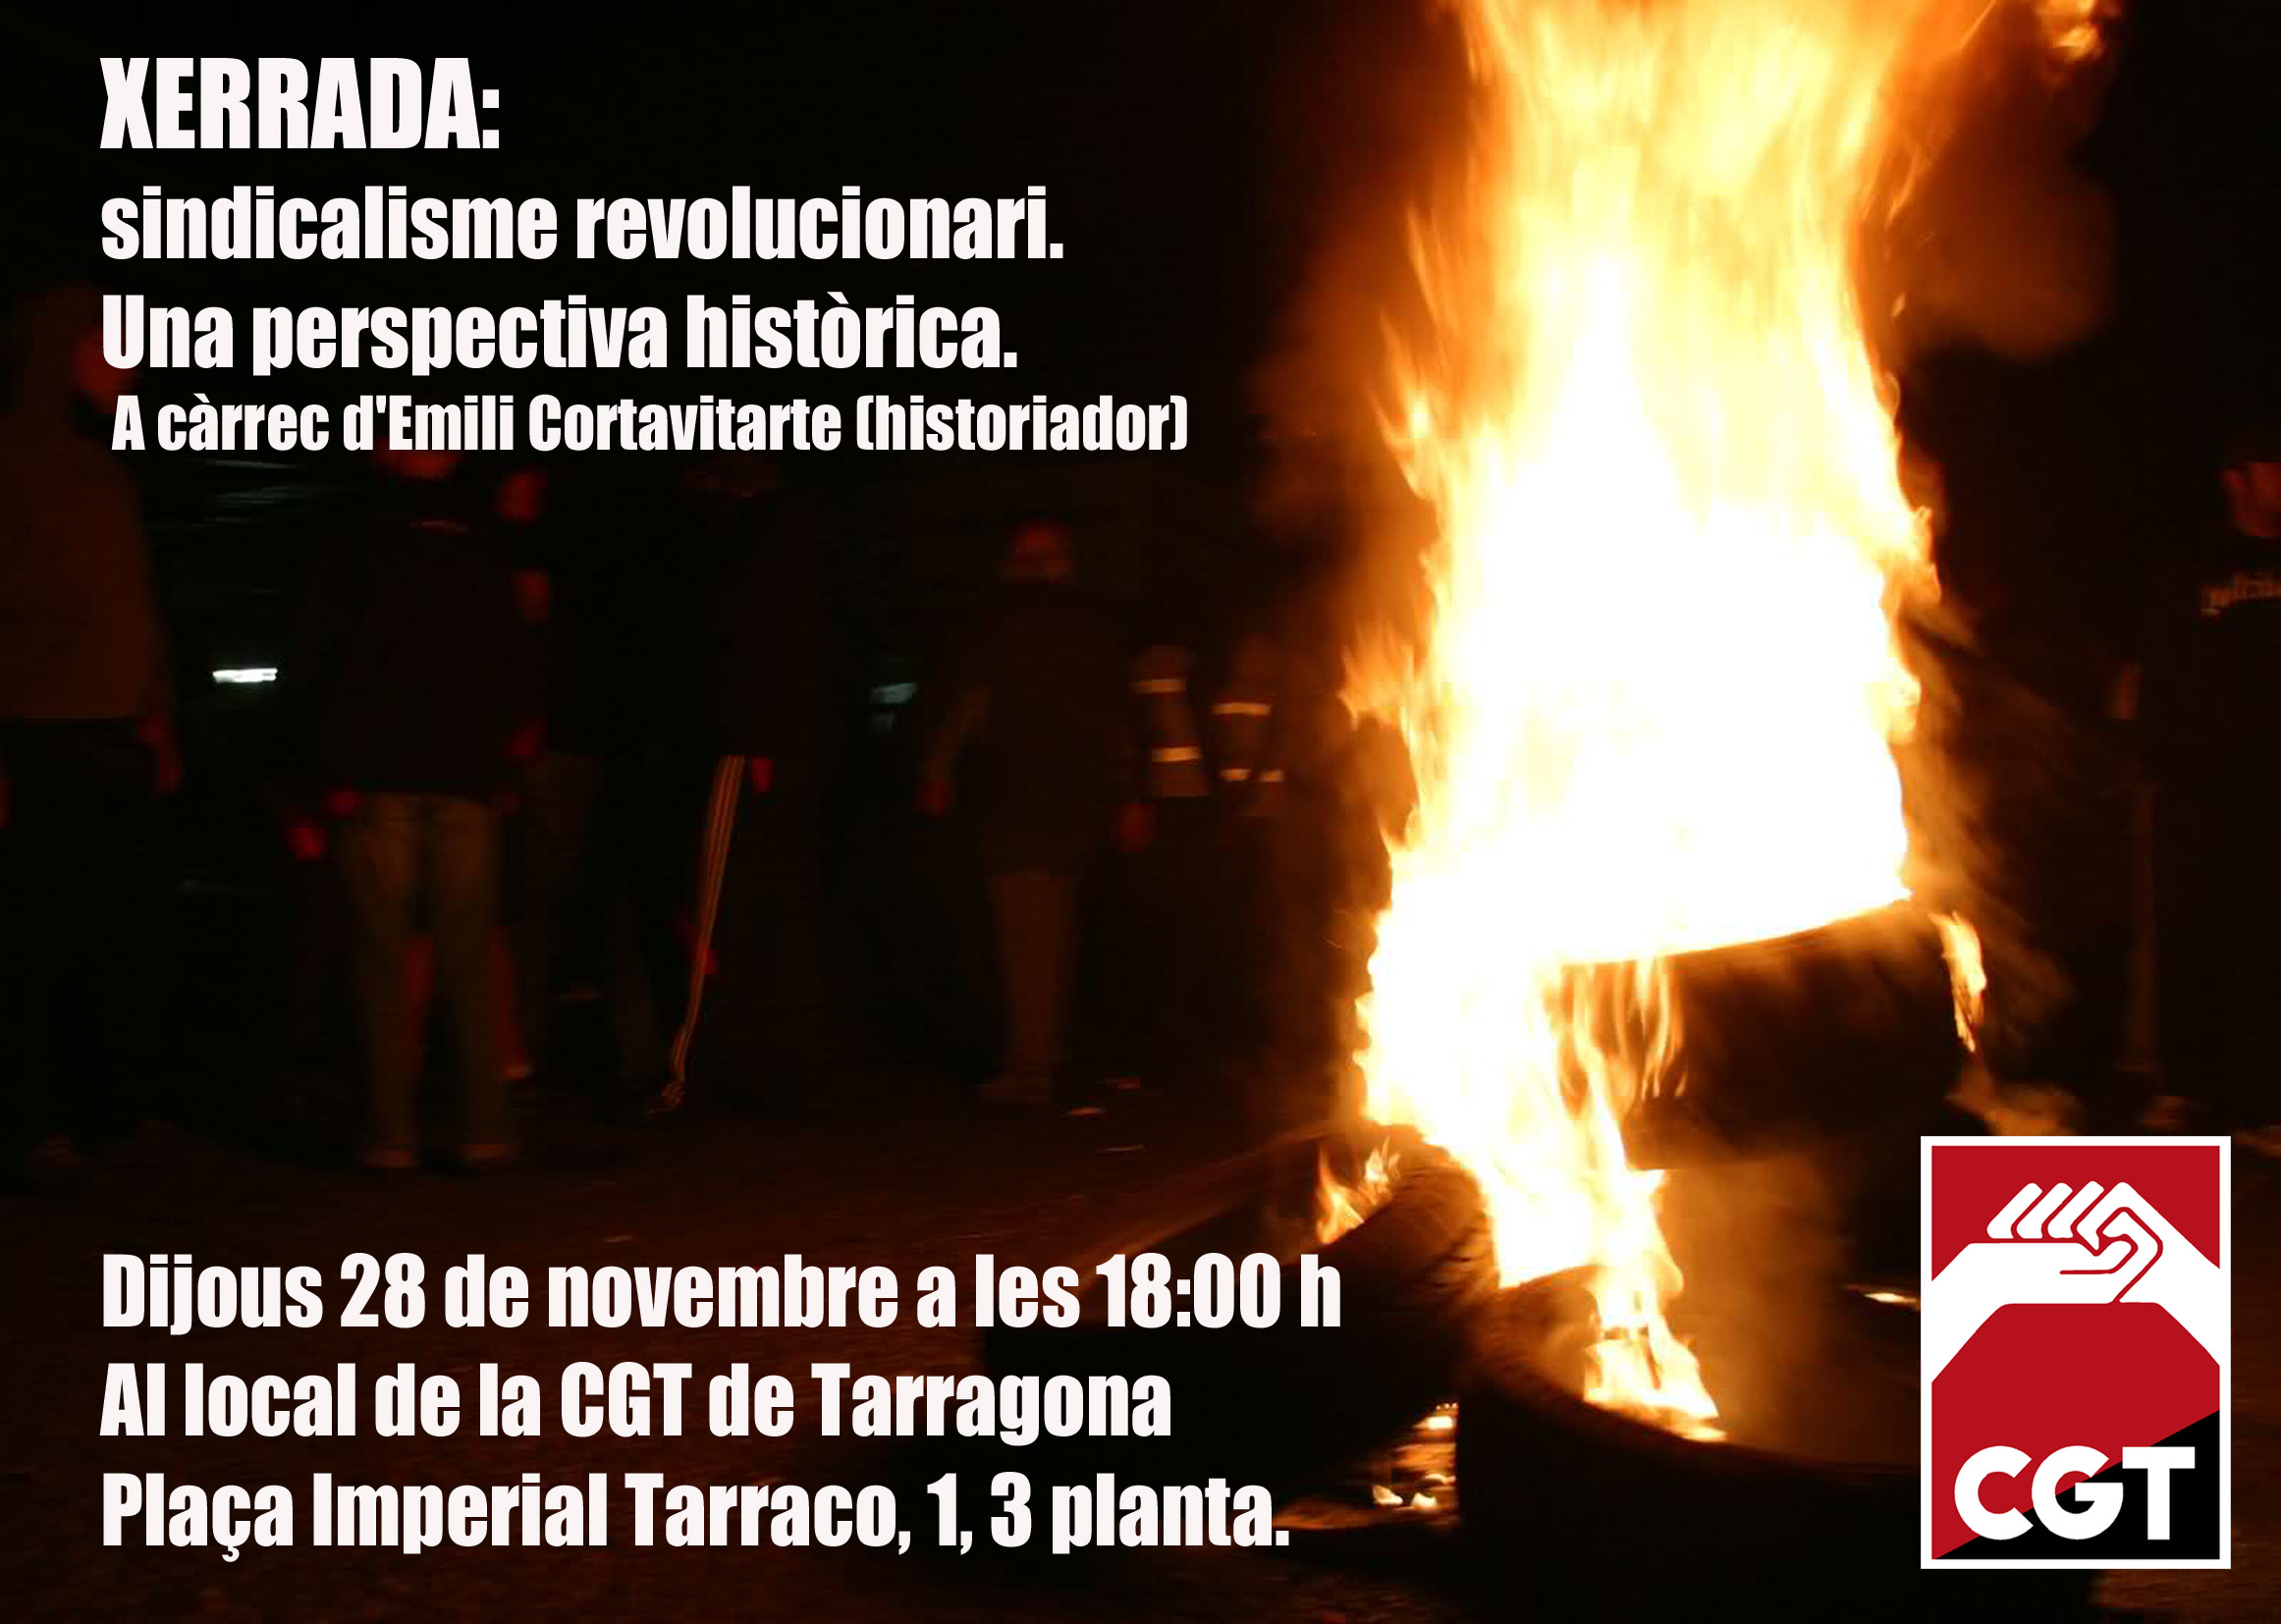 Xerrada Sindicalisme Revolucionari 28 de novembre cgt tarragona